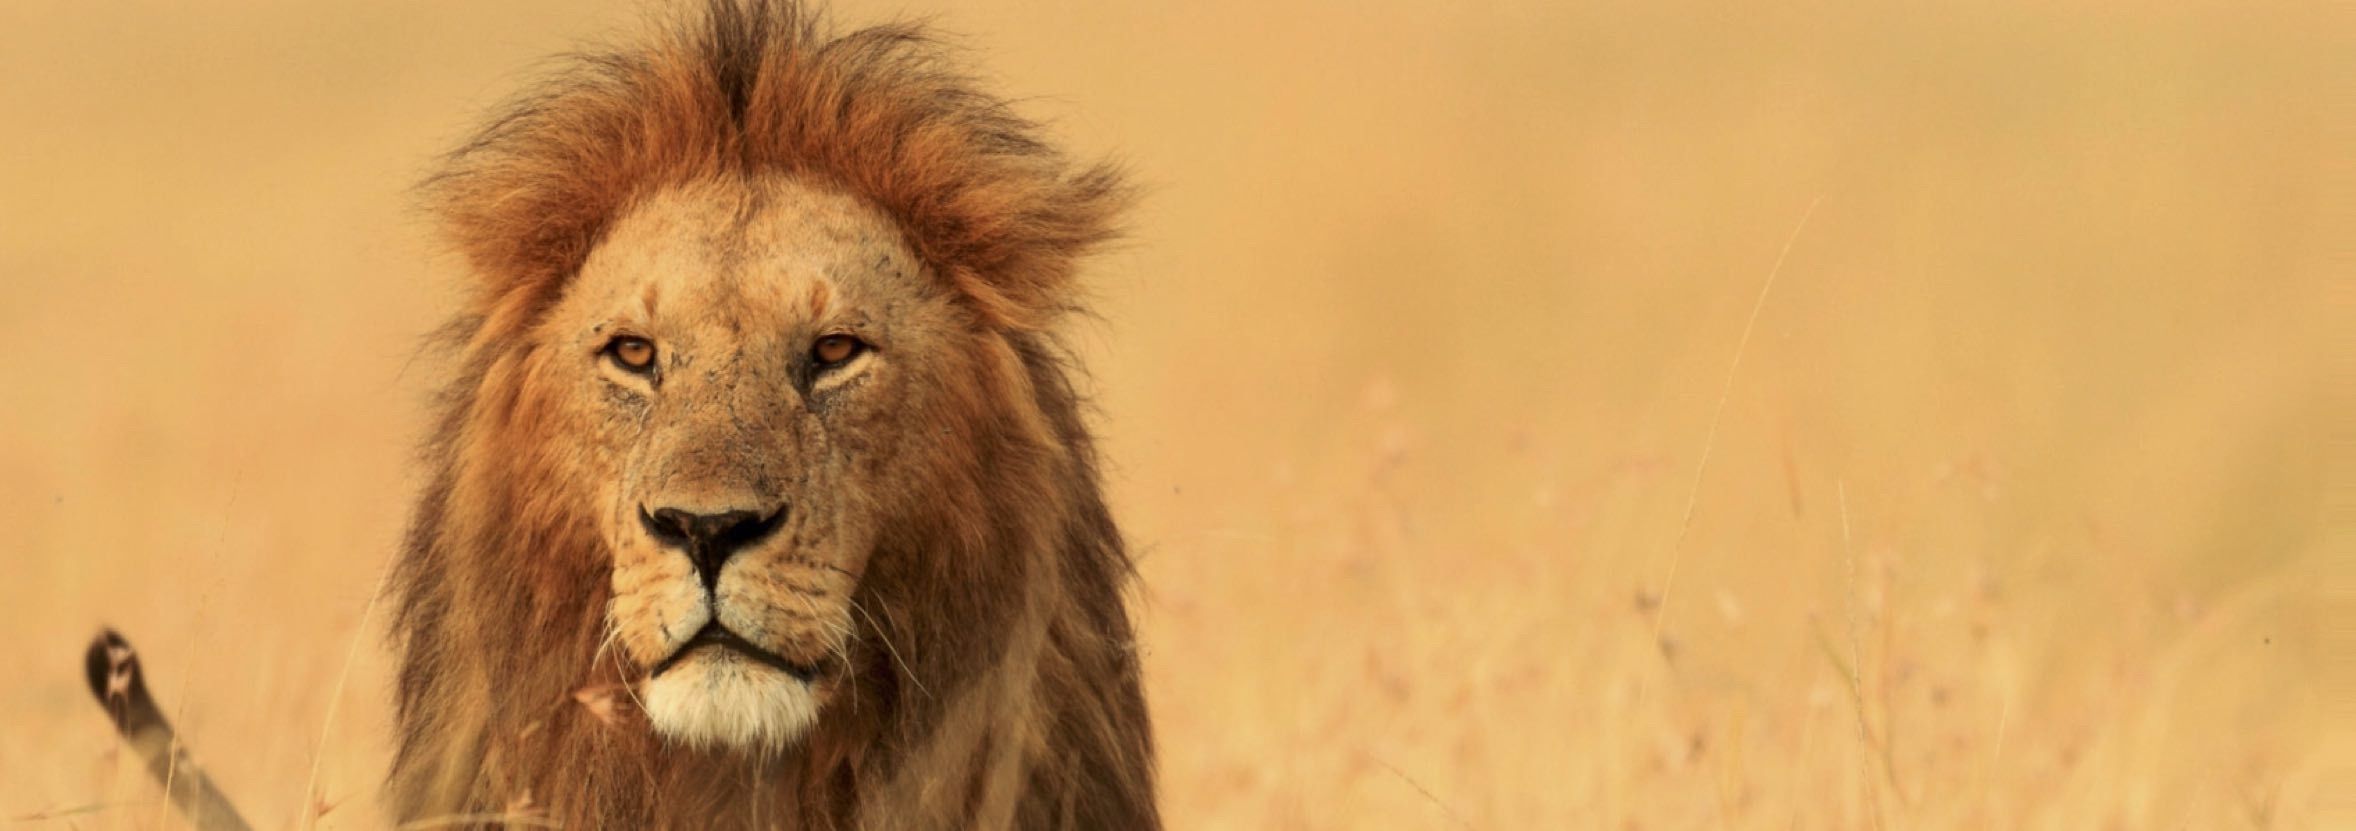 Roi Lion dans la savane africaine